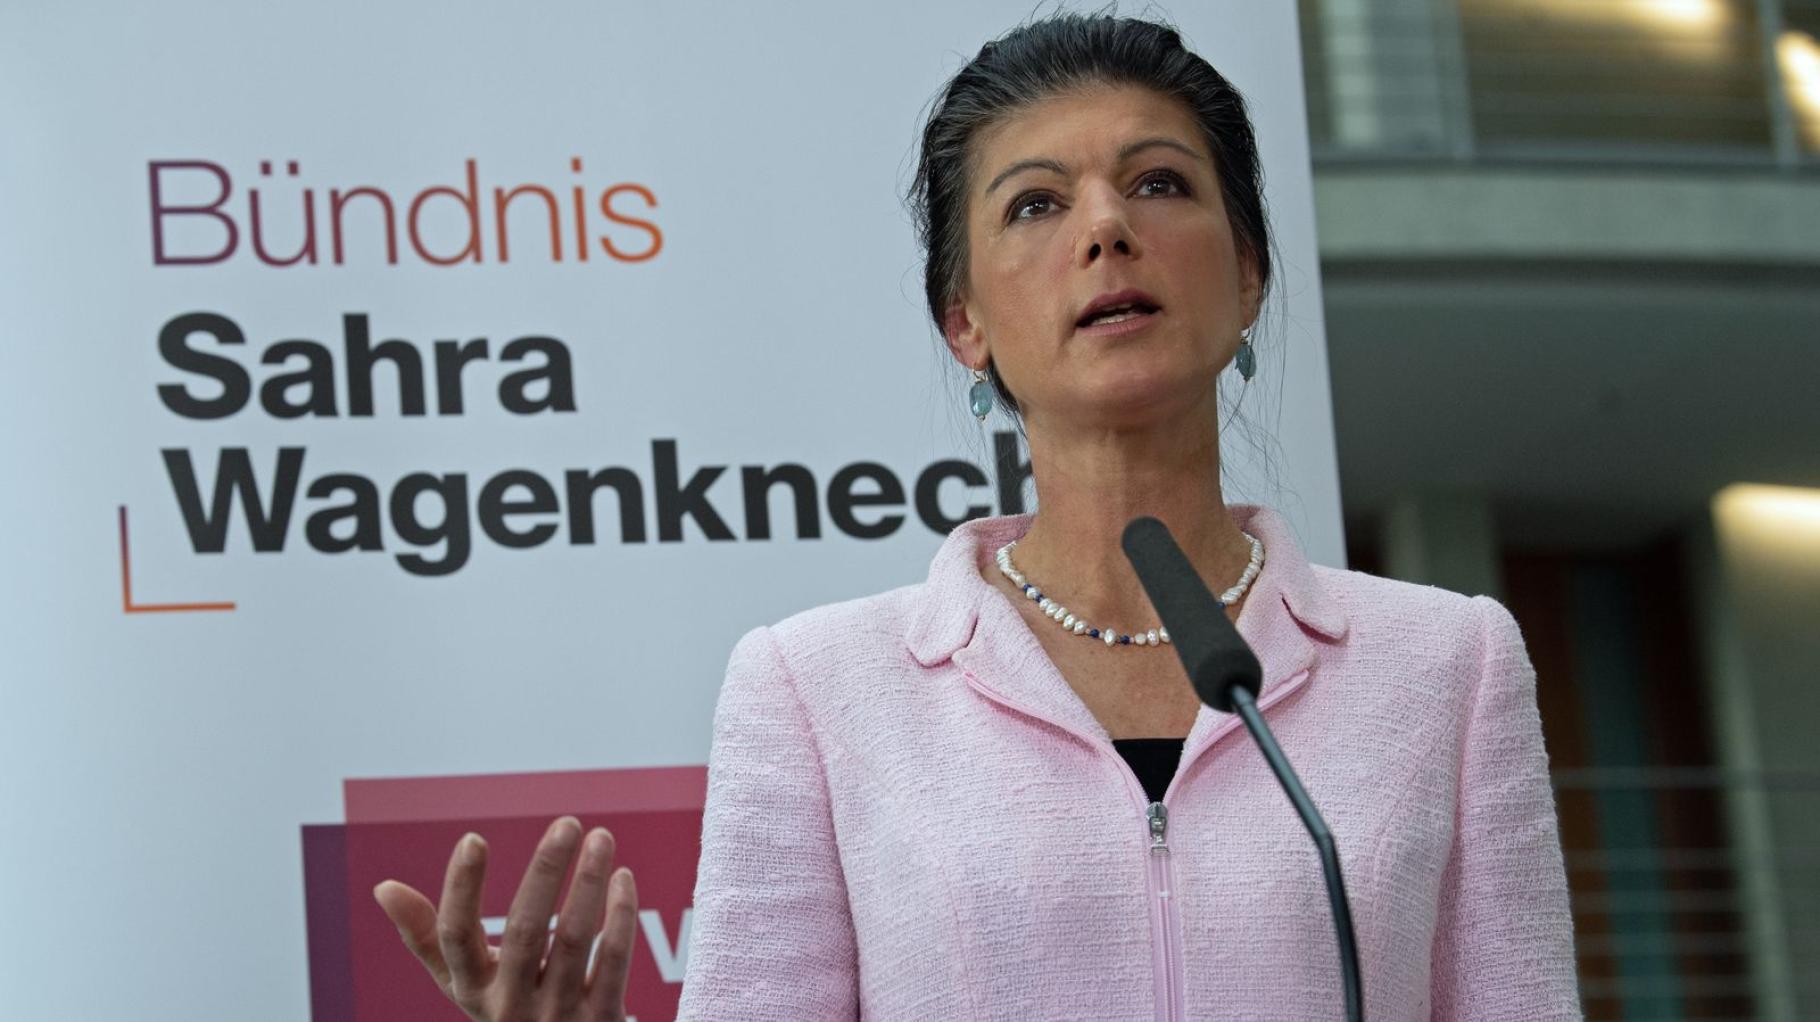 Bündnis Sahra Wagenknecht bekommt Vier-Millionen-Spende aus MV